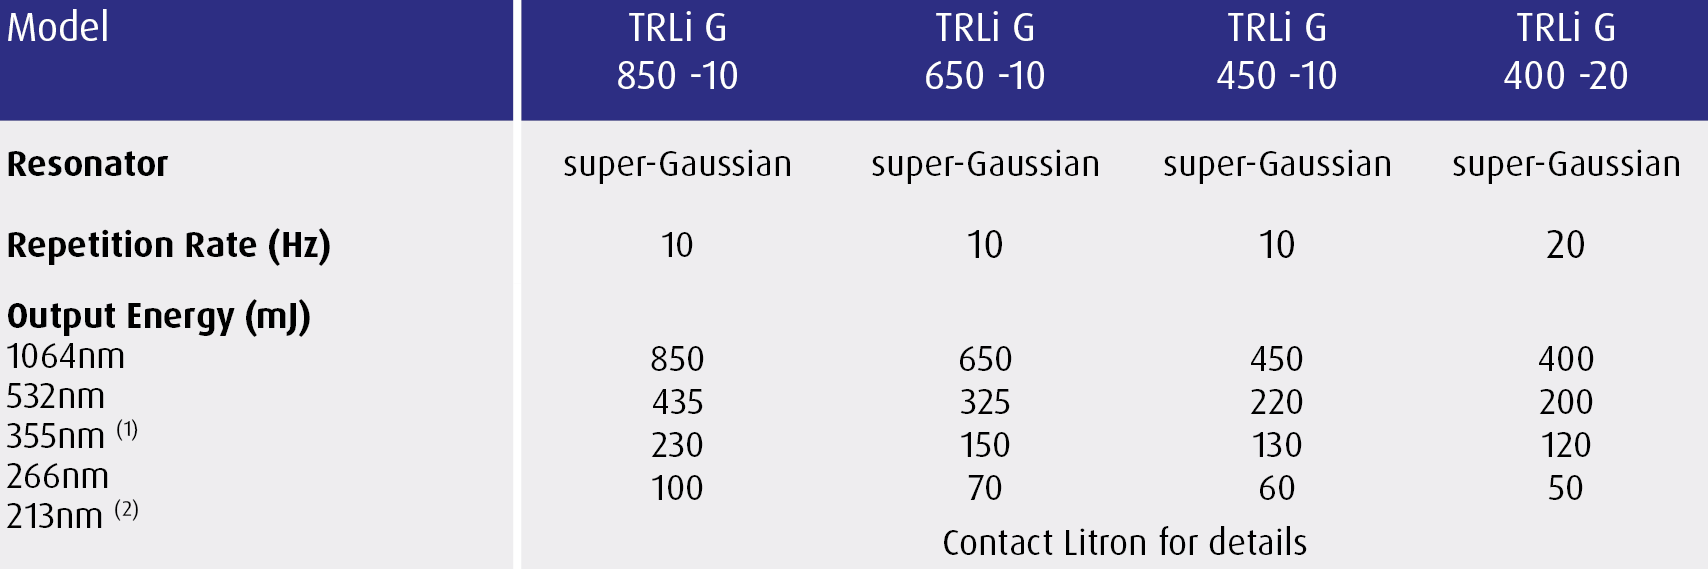 TRLi G 850/450 Specification Highlights